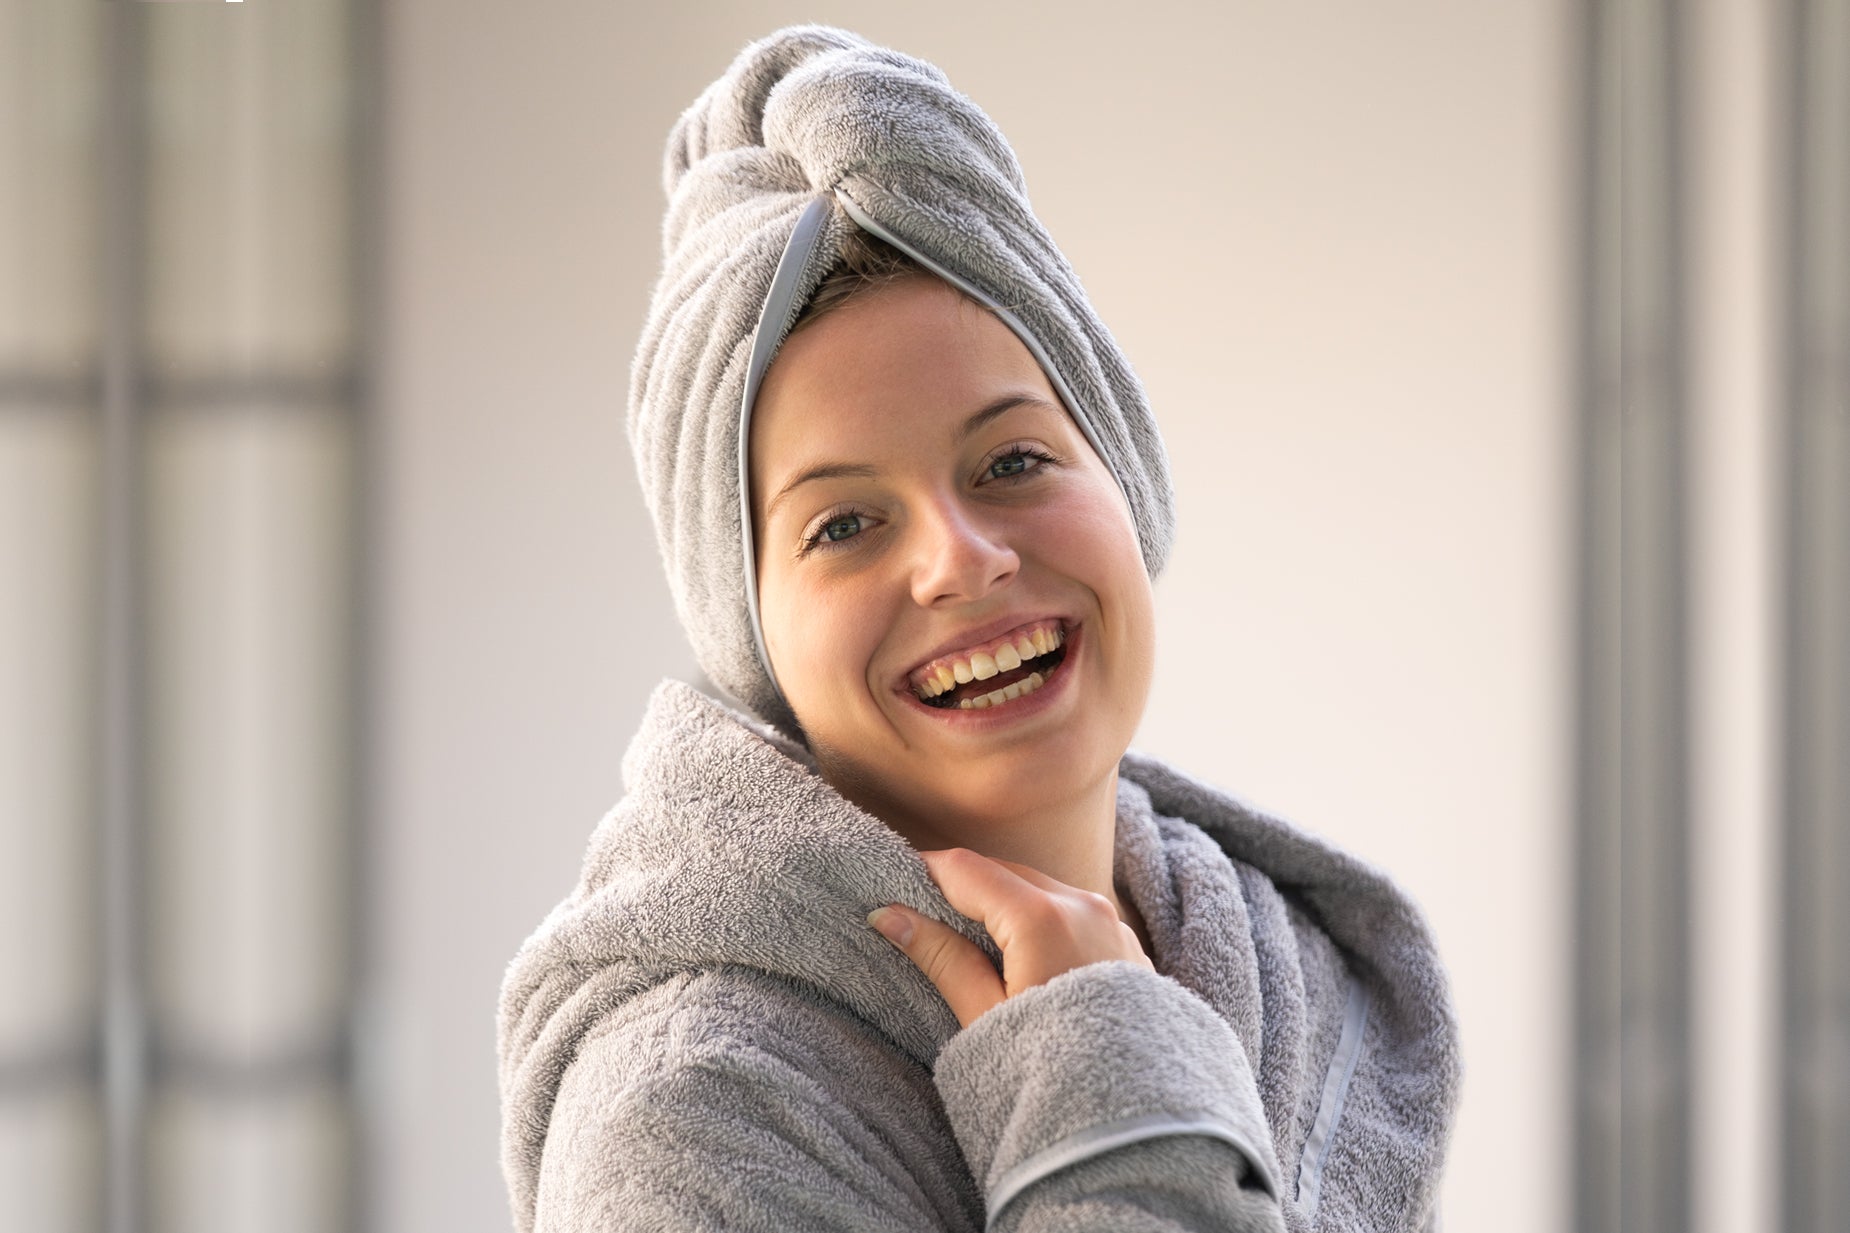 Dieses Bild zeigt eine lächelnde Frau mit einem edlen greuen Bademantel